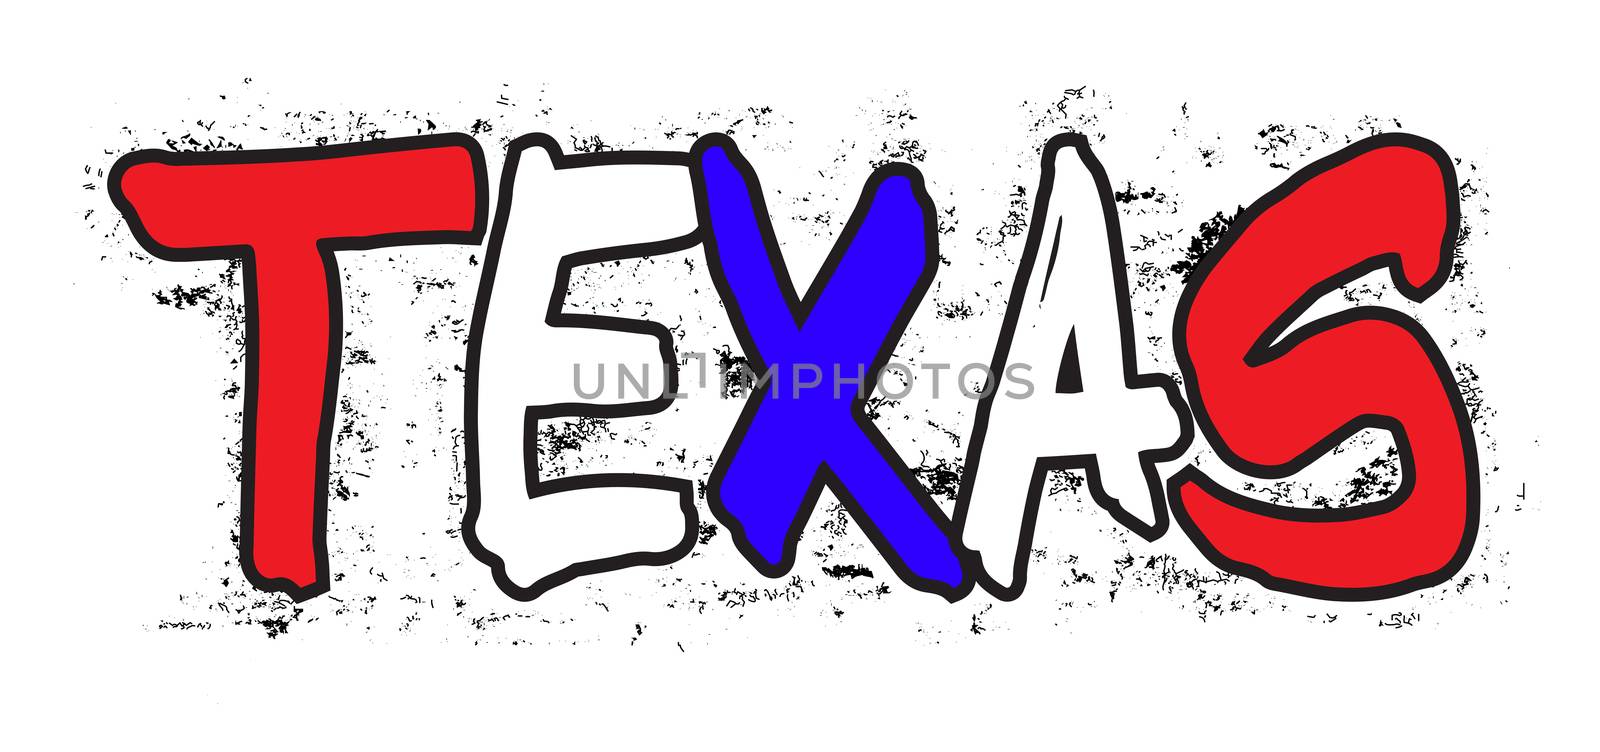 Texas Graffiti by Bigalbaloo